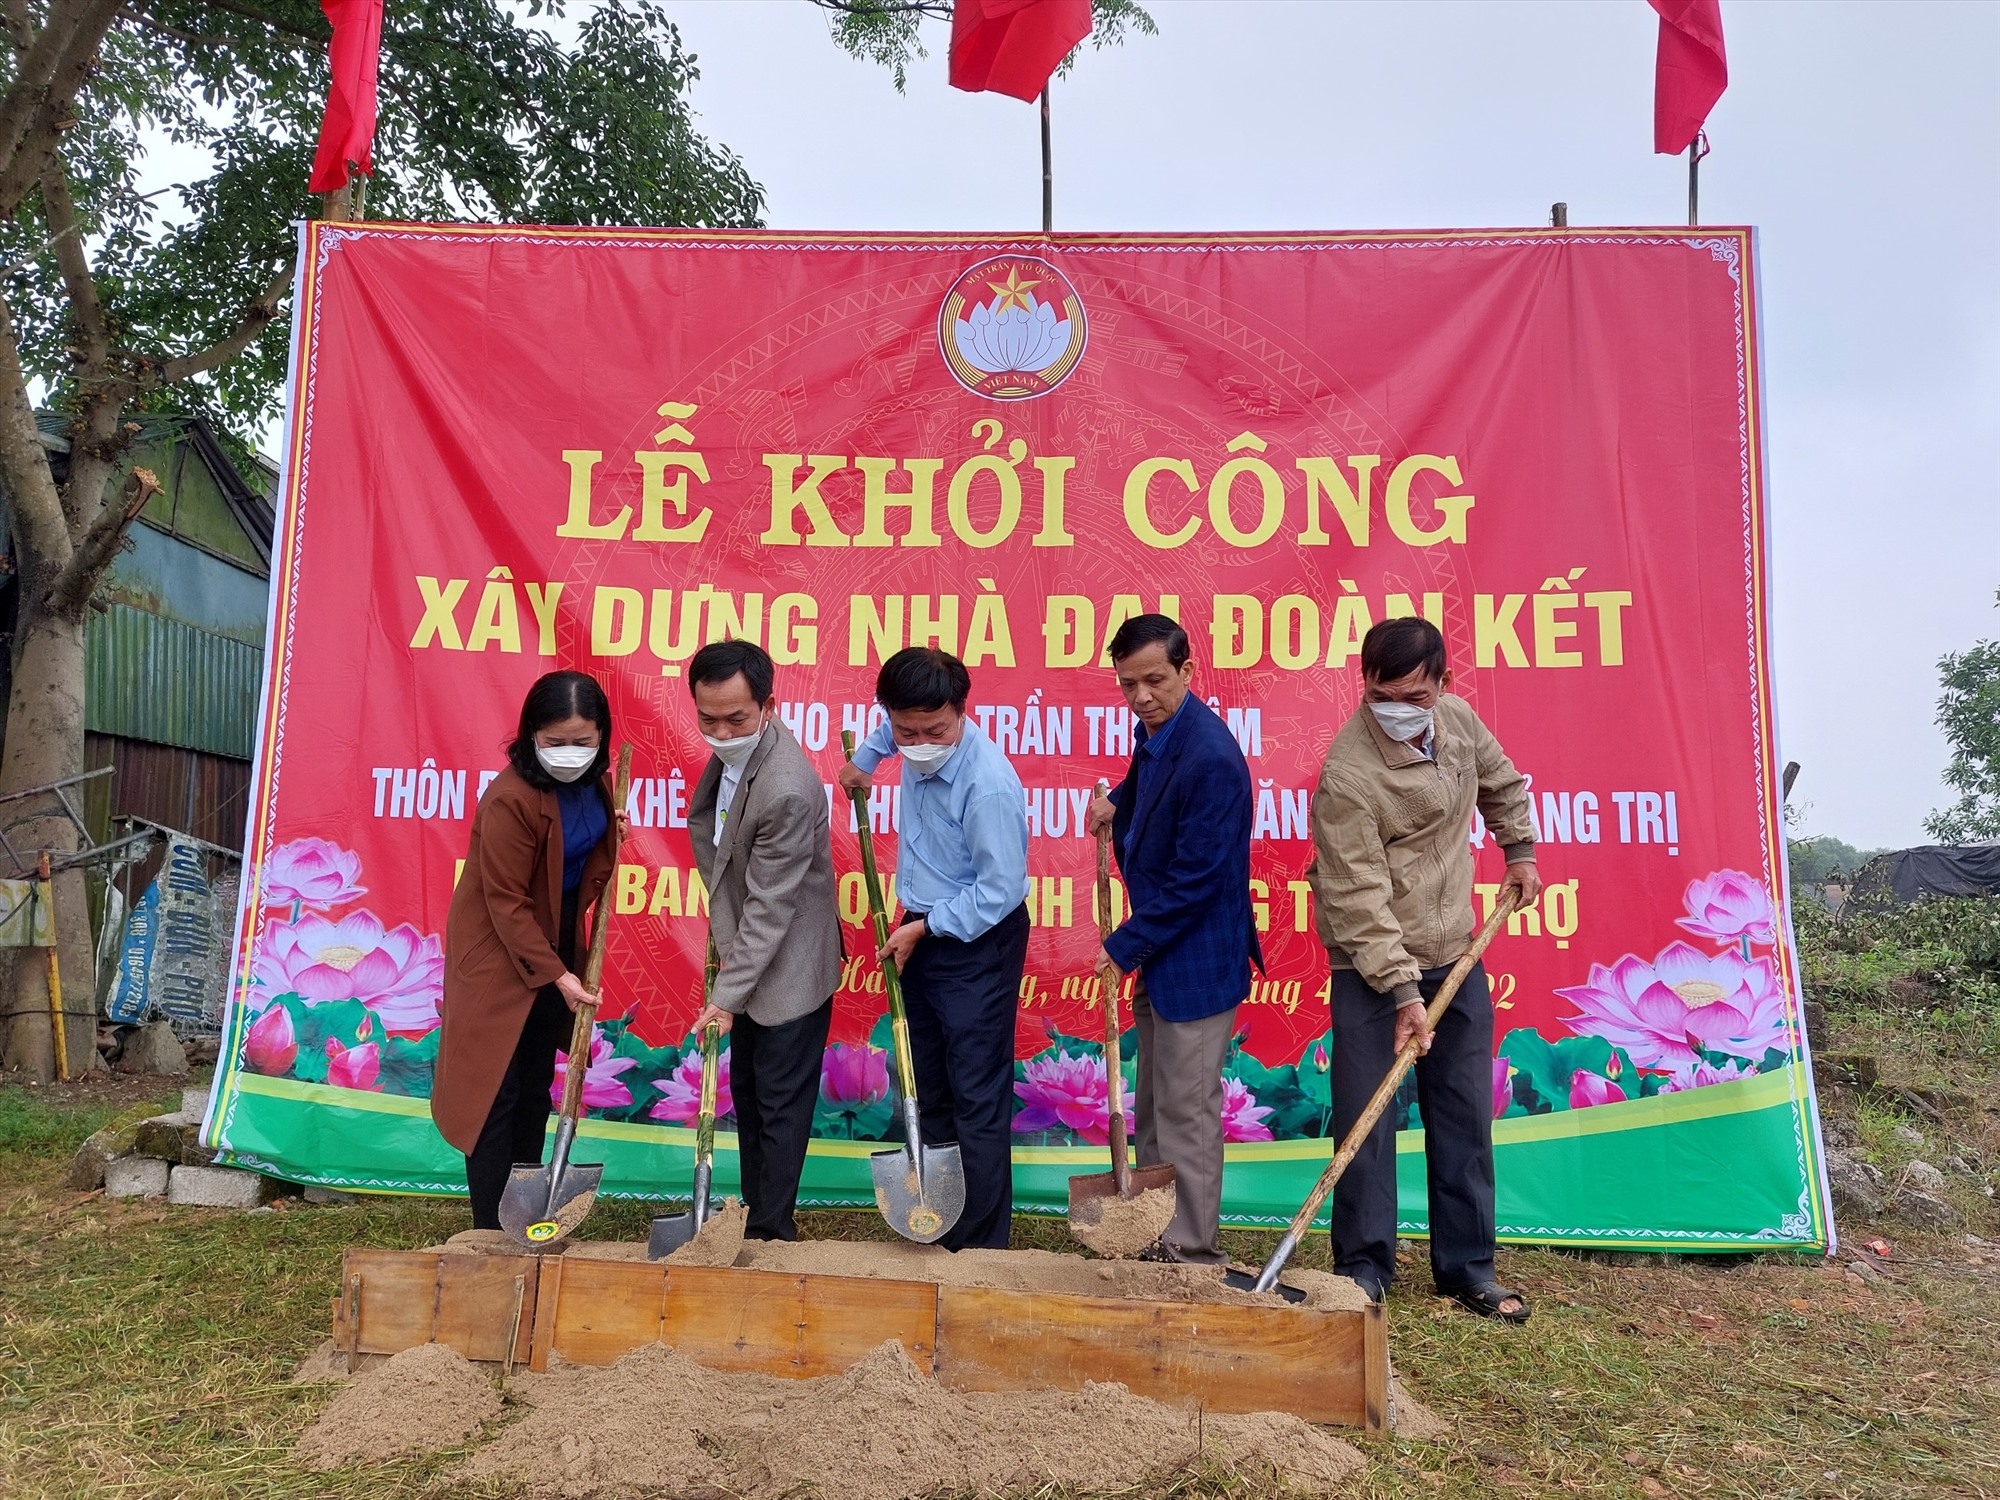 Khởi công xây dựng nhà đại đoàn kết cho bà Trần Thị Trâm thôn Đại An Khê, xã Hải Thượng, huyện Hải Lăng - Ảnh: T.P